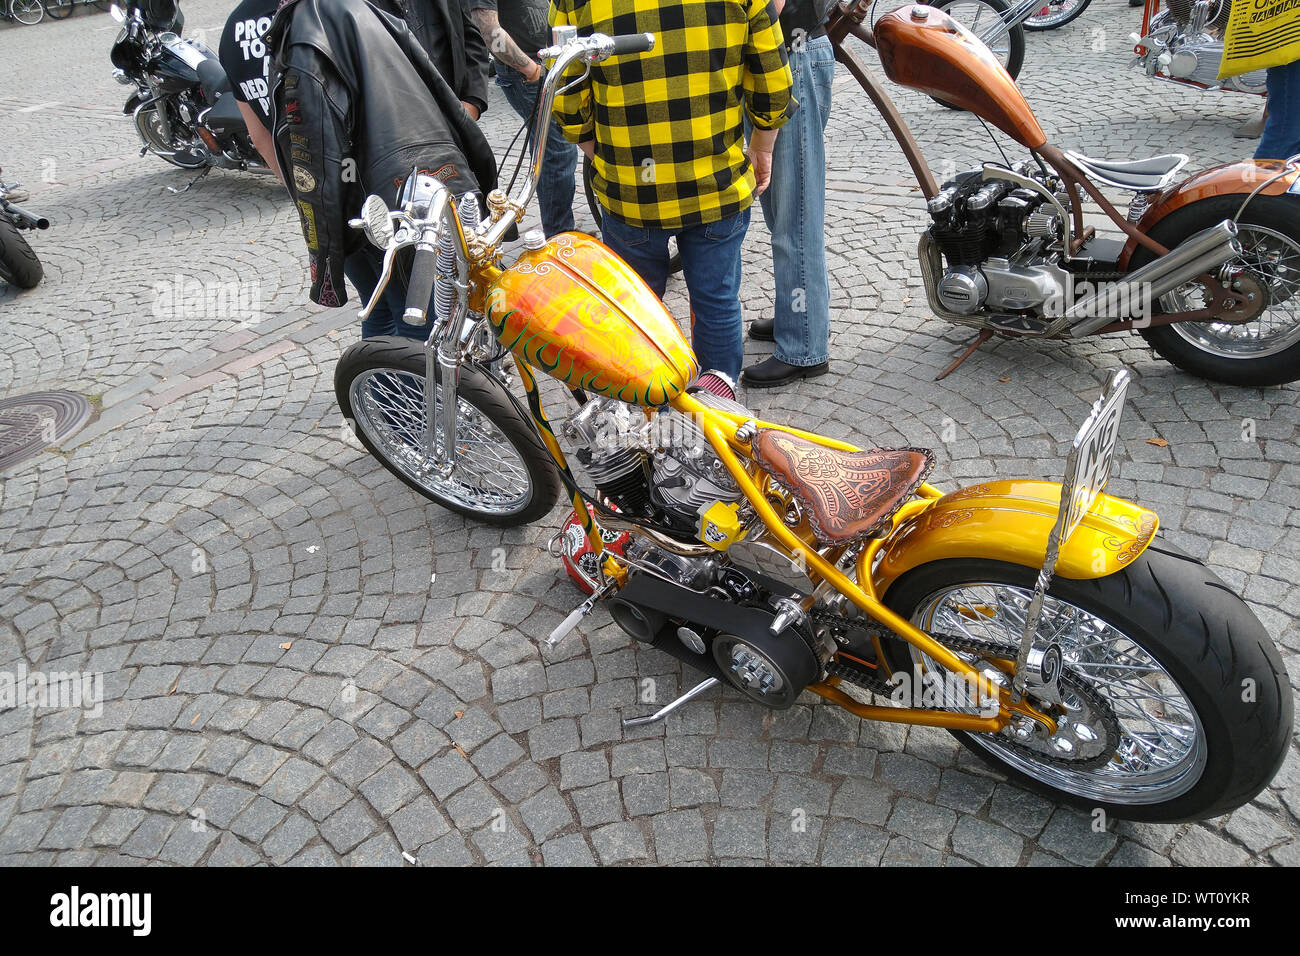 Customized motorcycle with Finnish national epic Kalevala theme. Stock Photo